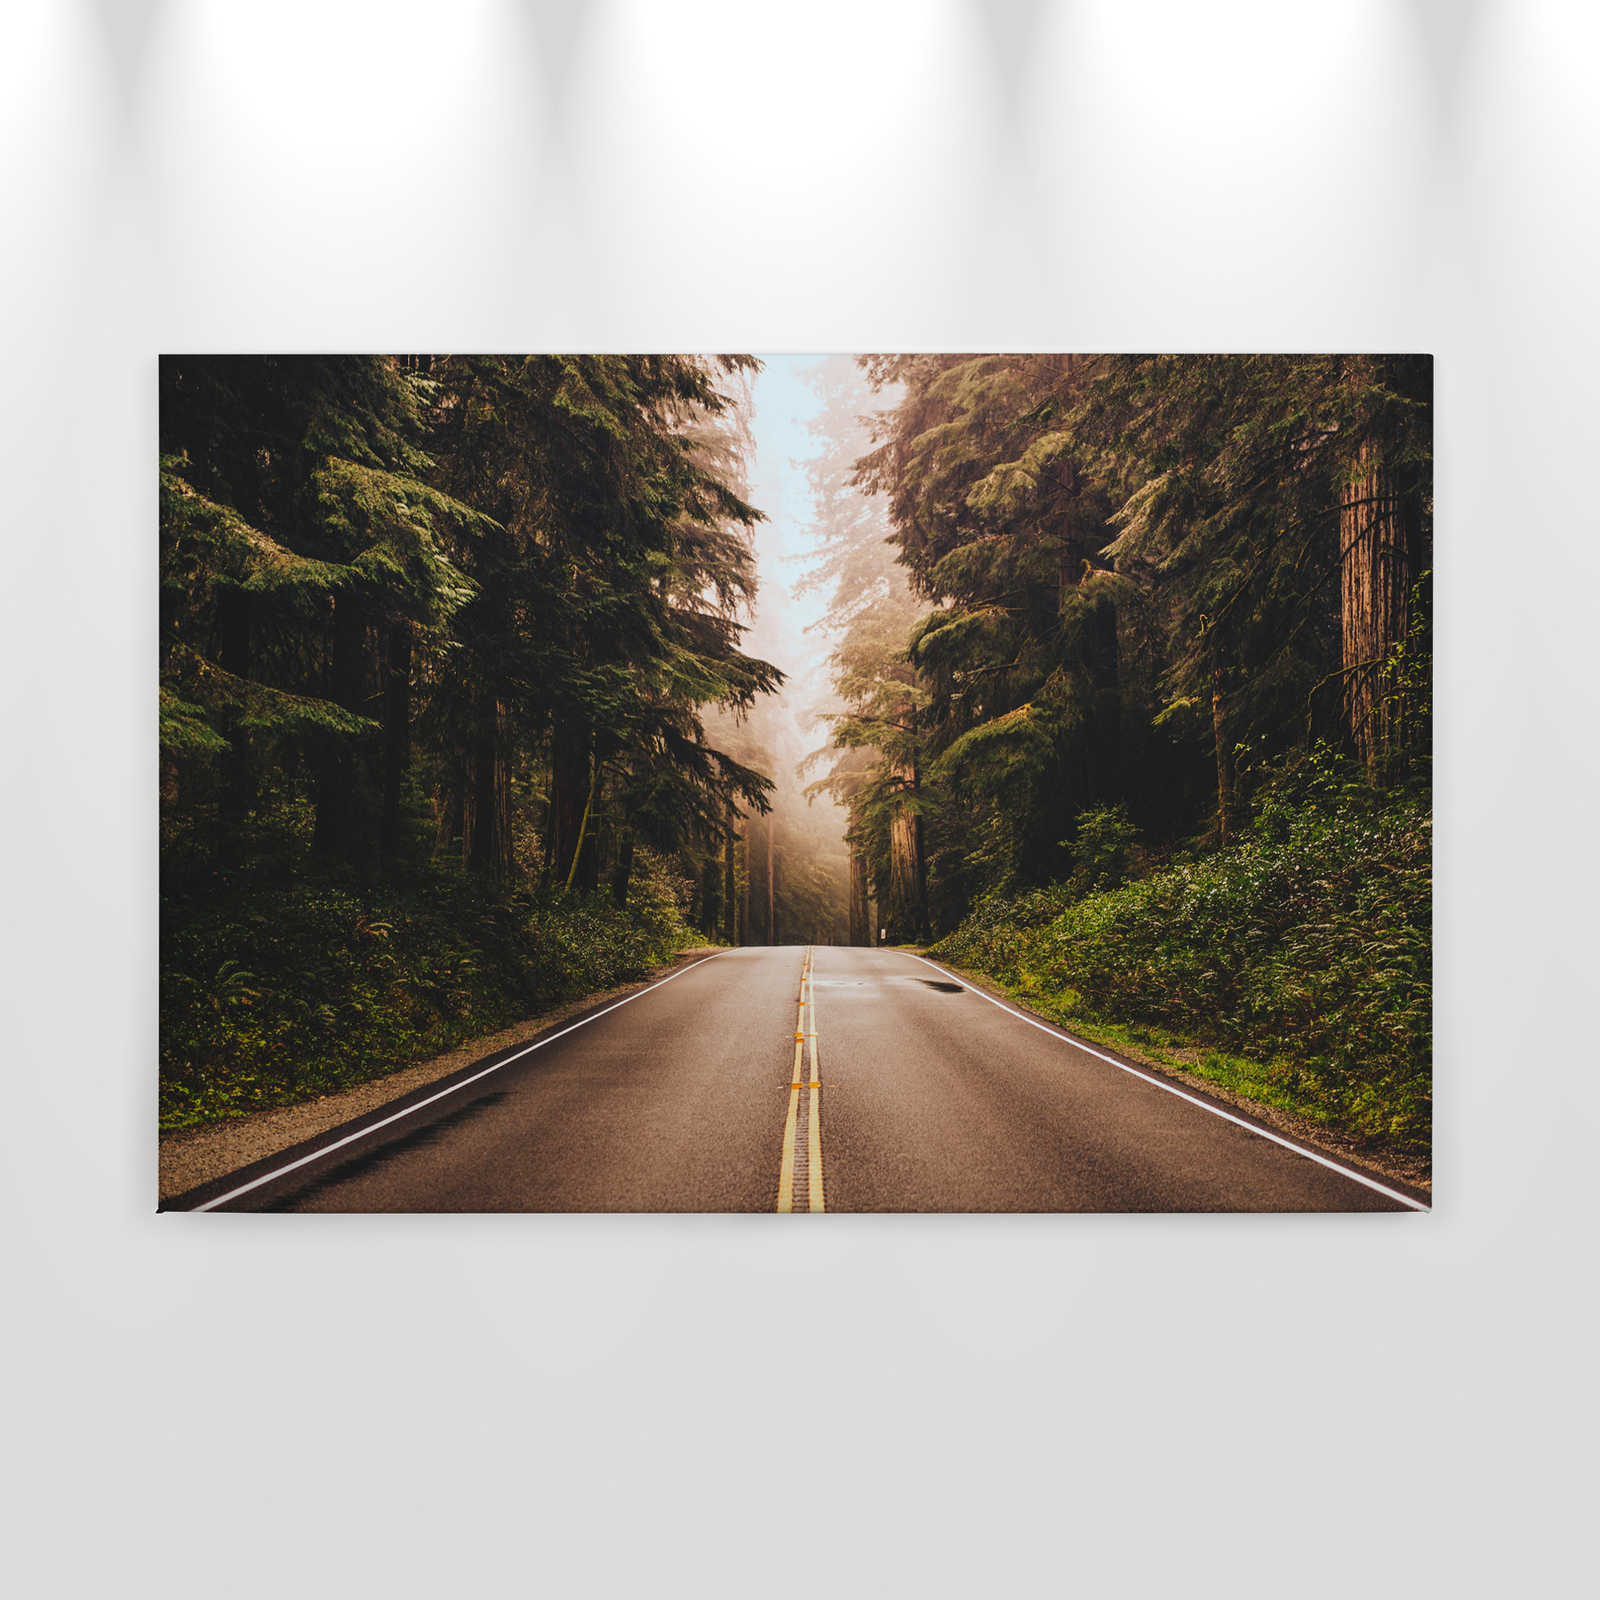             Canvas met Amerikaanse snelweg in het bos - 0,90 m x 0,60 m
        